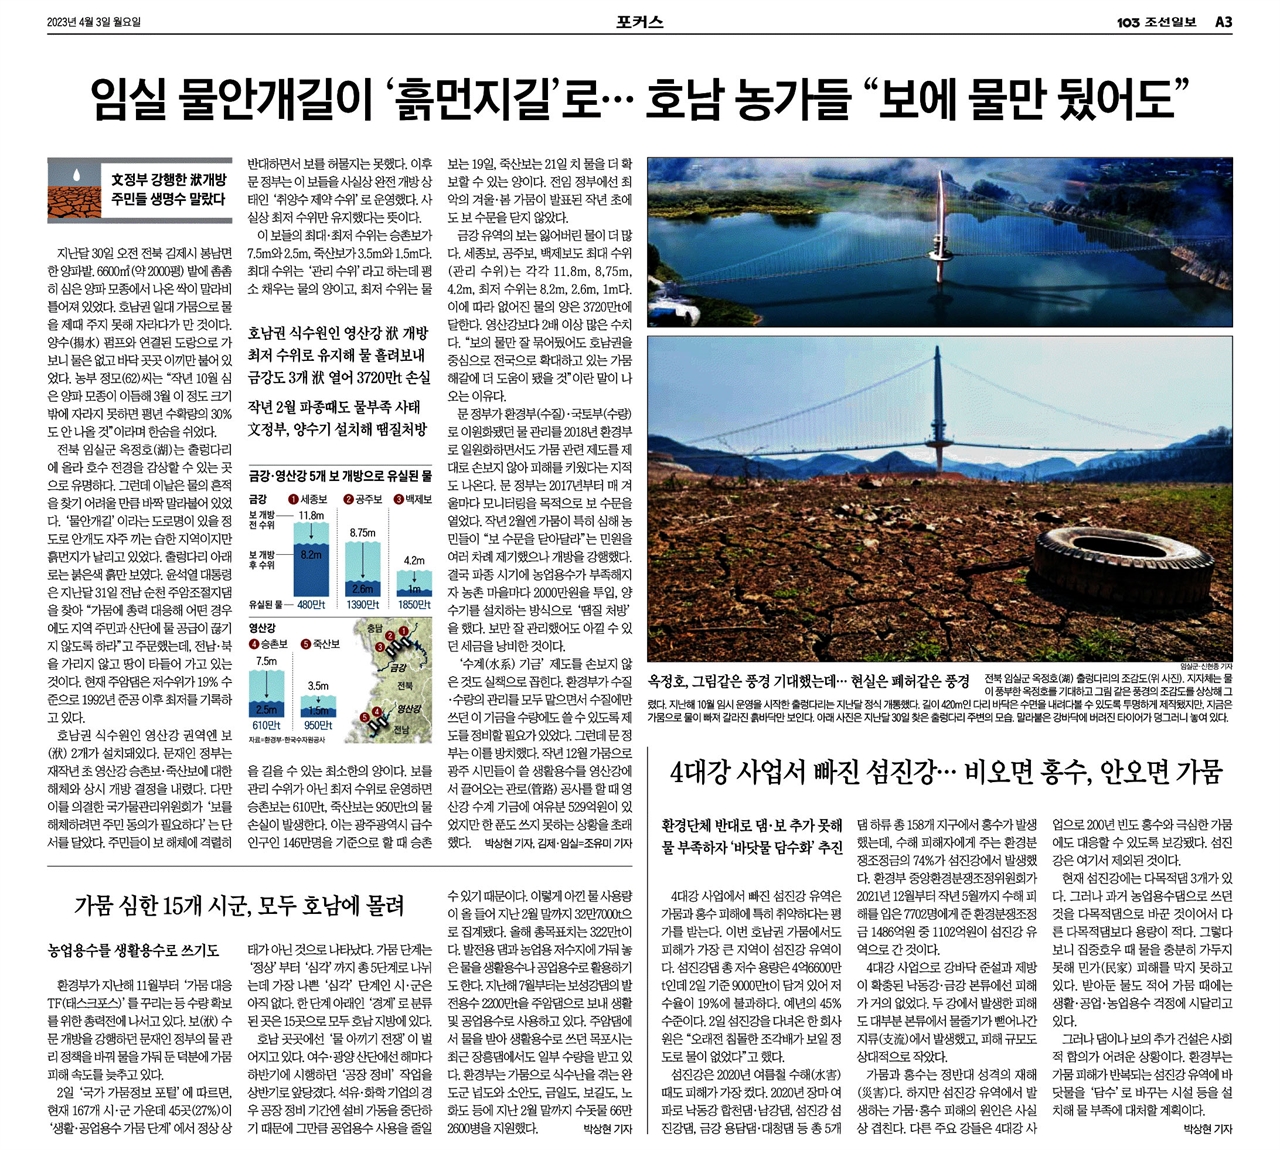 호남지역의 가뭄을 4대강 보 해체·개방 탓이라고 보도한 <조선일보> 3일자 3면.